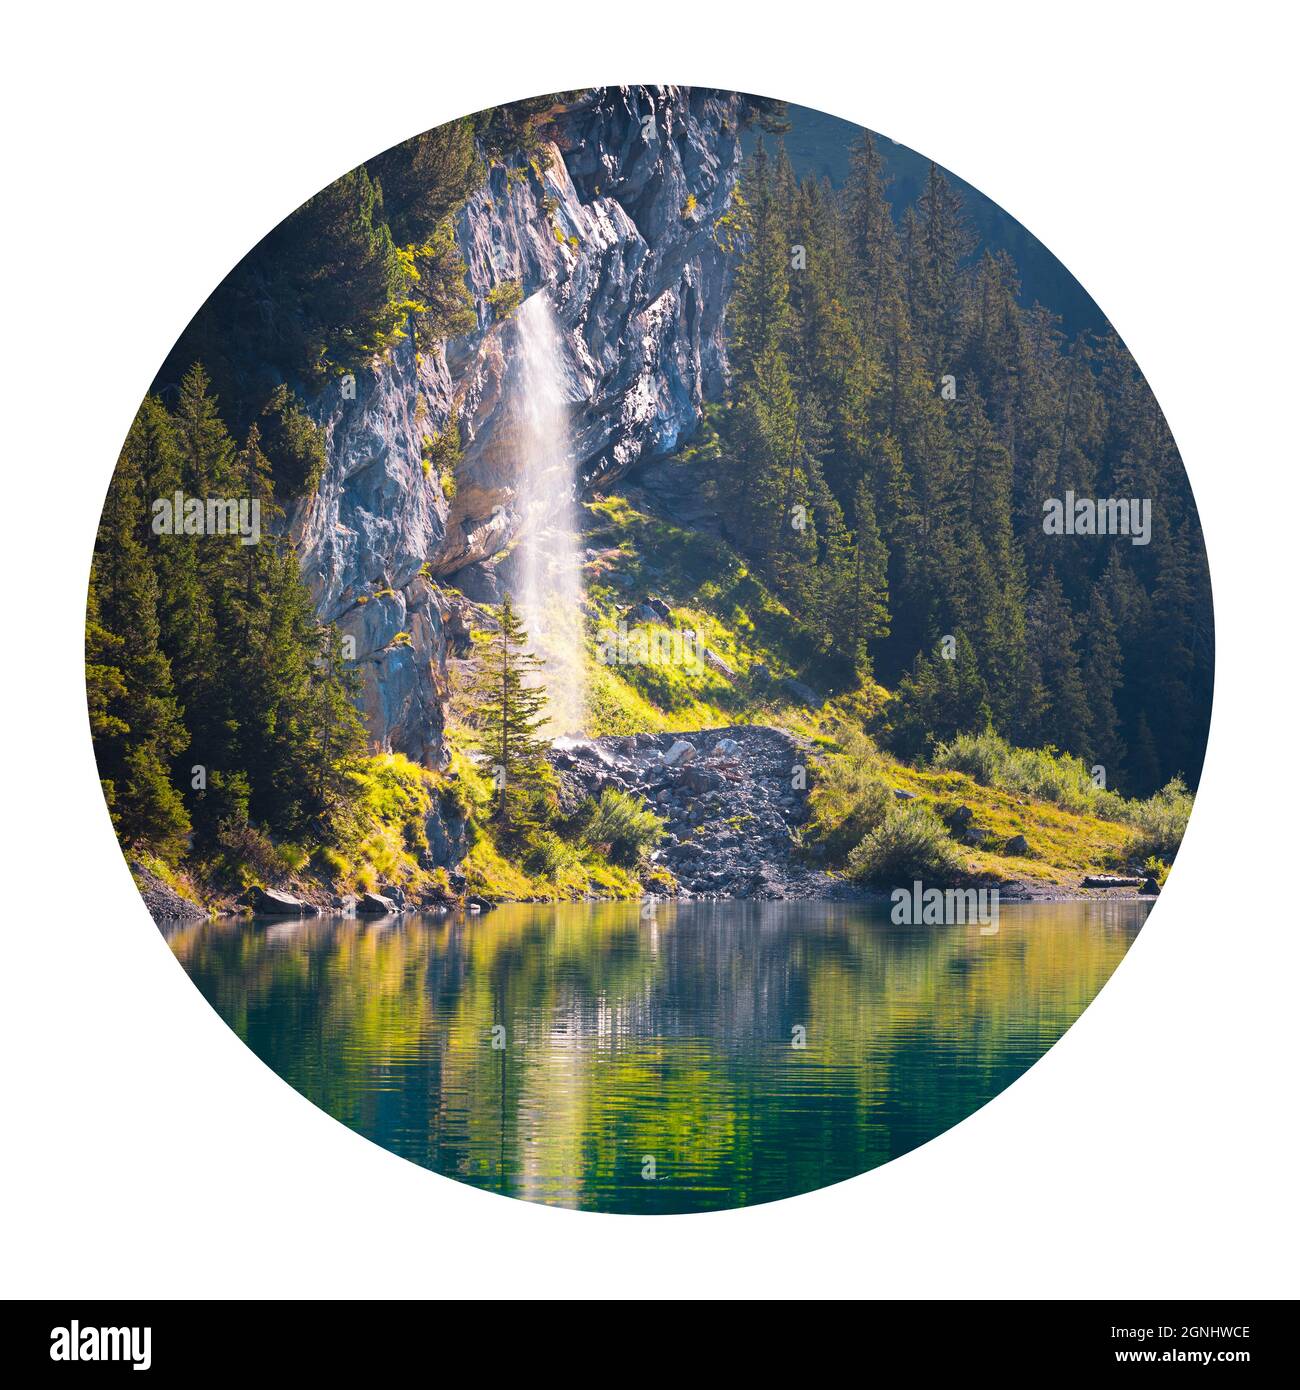 Icona rotonda della natura con paesaggio. Cascata d'acqua pura su un lago unico - Oeschinen/Oeschinensee, Alpi dell'Oberland Bernese, Svizzera, Europa. Fotog Foto Stock